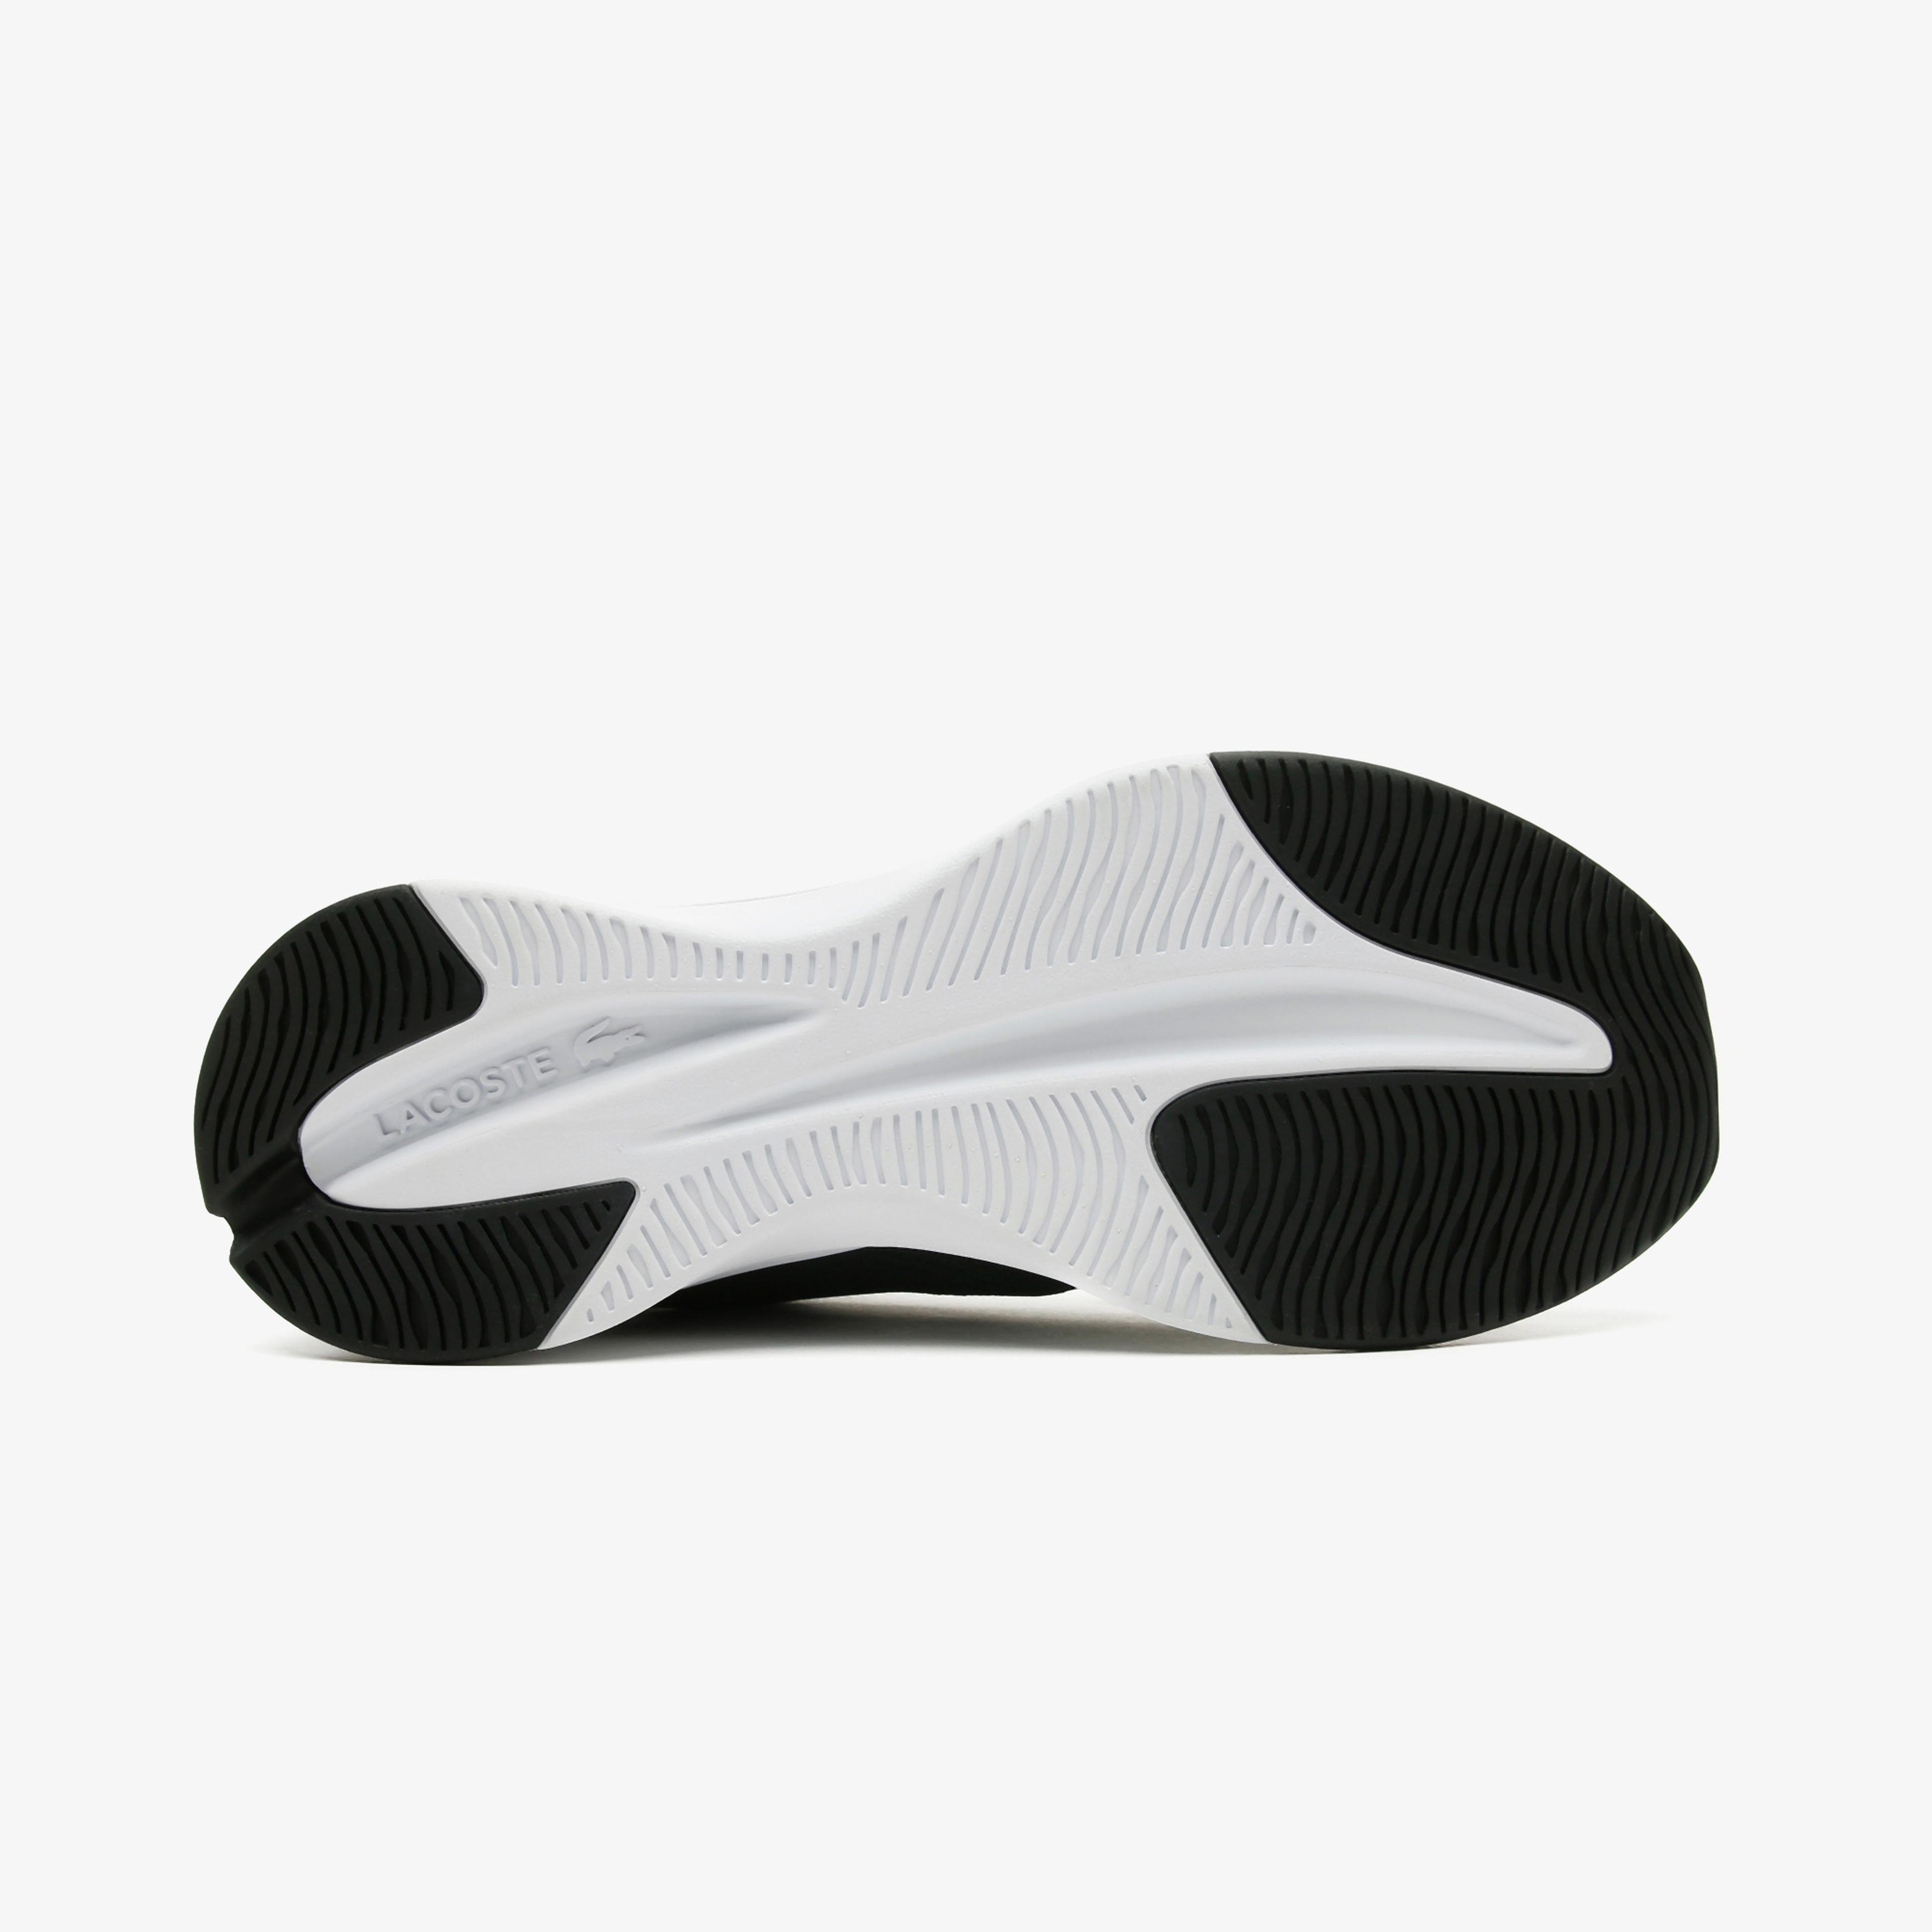 Lacoste Run Spin 0721 1 Sma Erkek Siyah - Beyaz Spor Ayakkabı